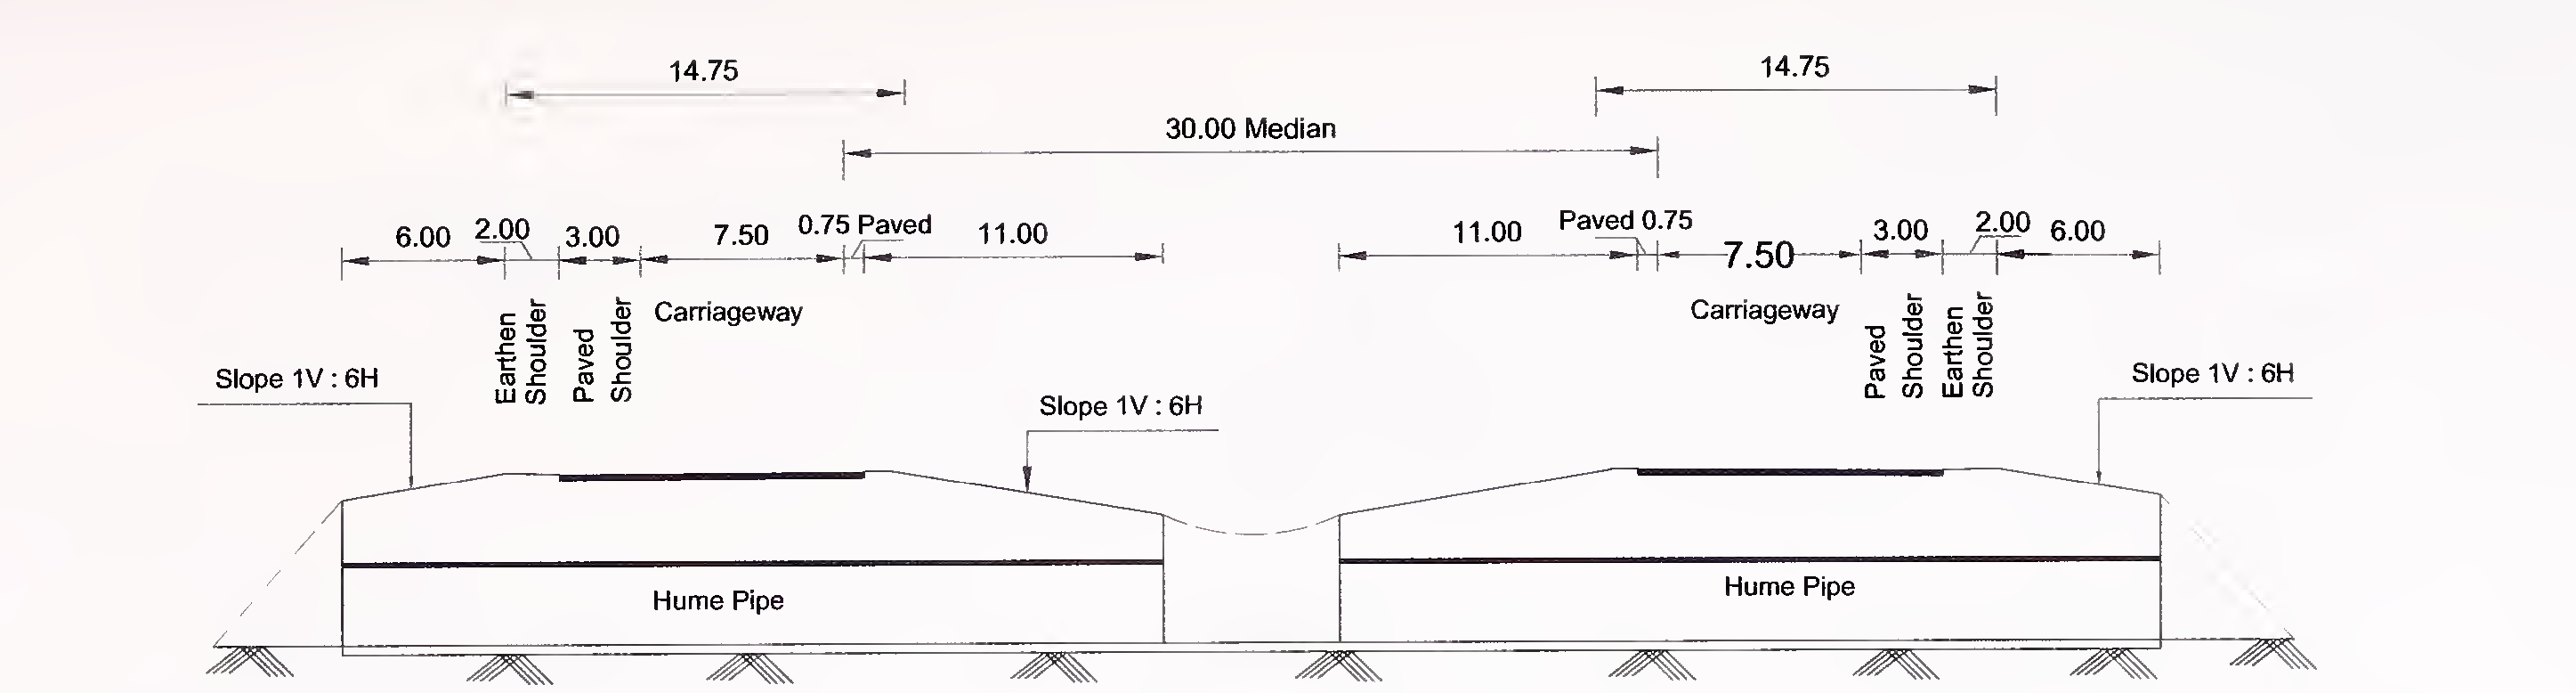 ചിത്രം 6.1 (എ) 4-ലെയ്‌നിനായുള്ള പൈപ്പ് കൽ‌വർട്ടിന്റെ സാധാരണ ക്രോസ്-സെക്ഷൻ (2 × 2) വിഷാദമുള്ള മീഡിയൻ ഉള്ള എക്സ്പ്രസ് വേ